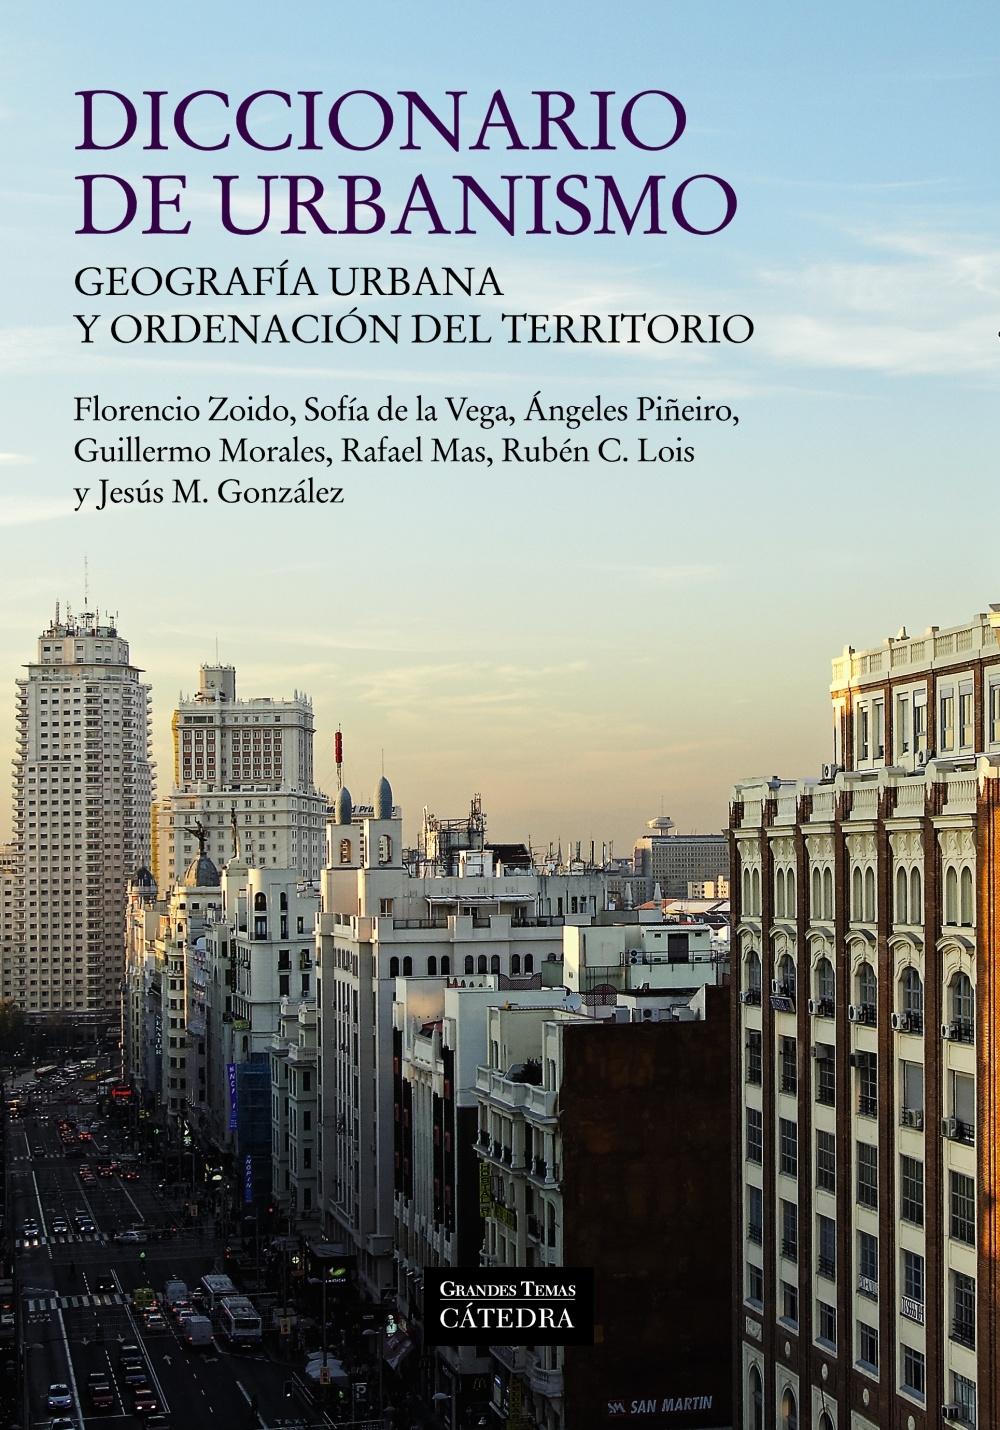 Diccionario de urbanismo "Geografía urbana y ordenación del territorio"